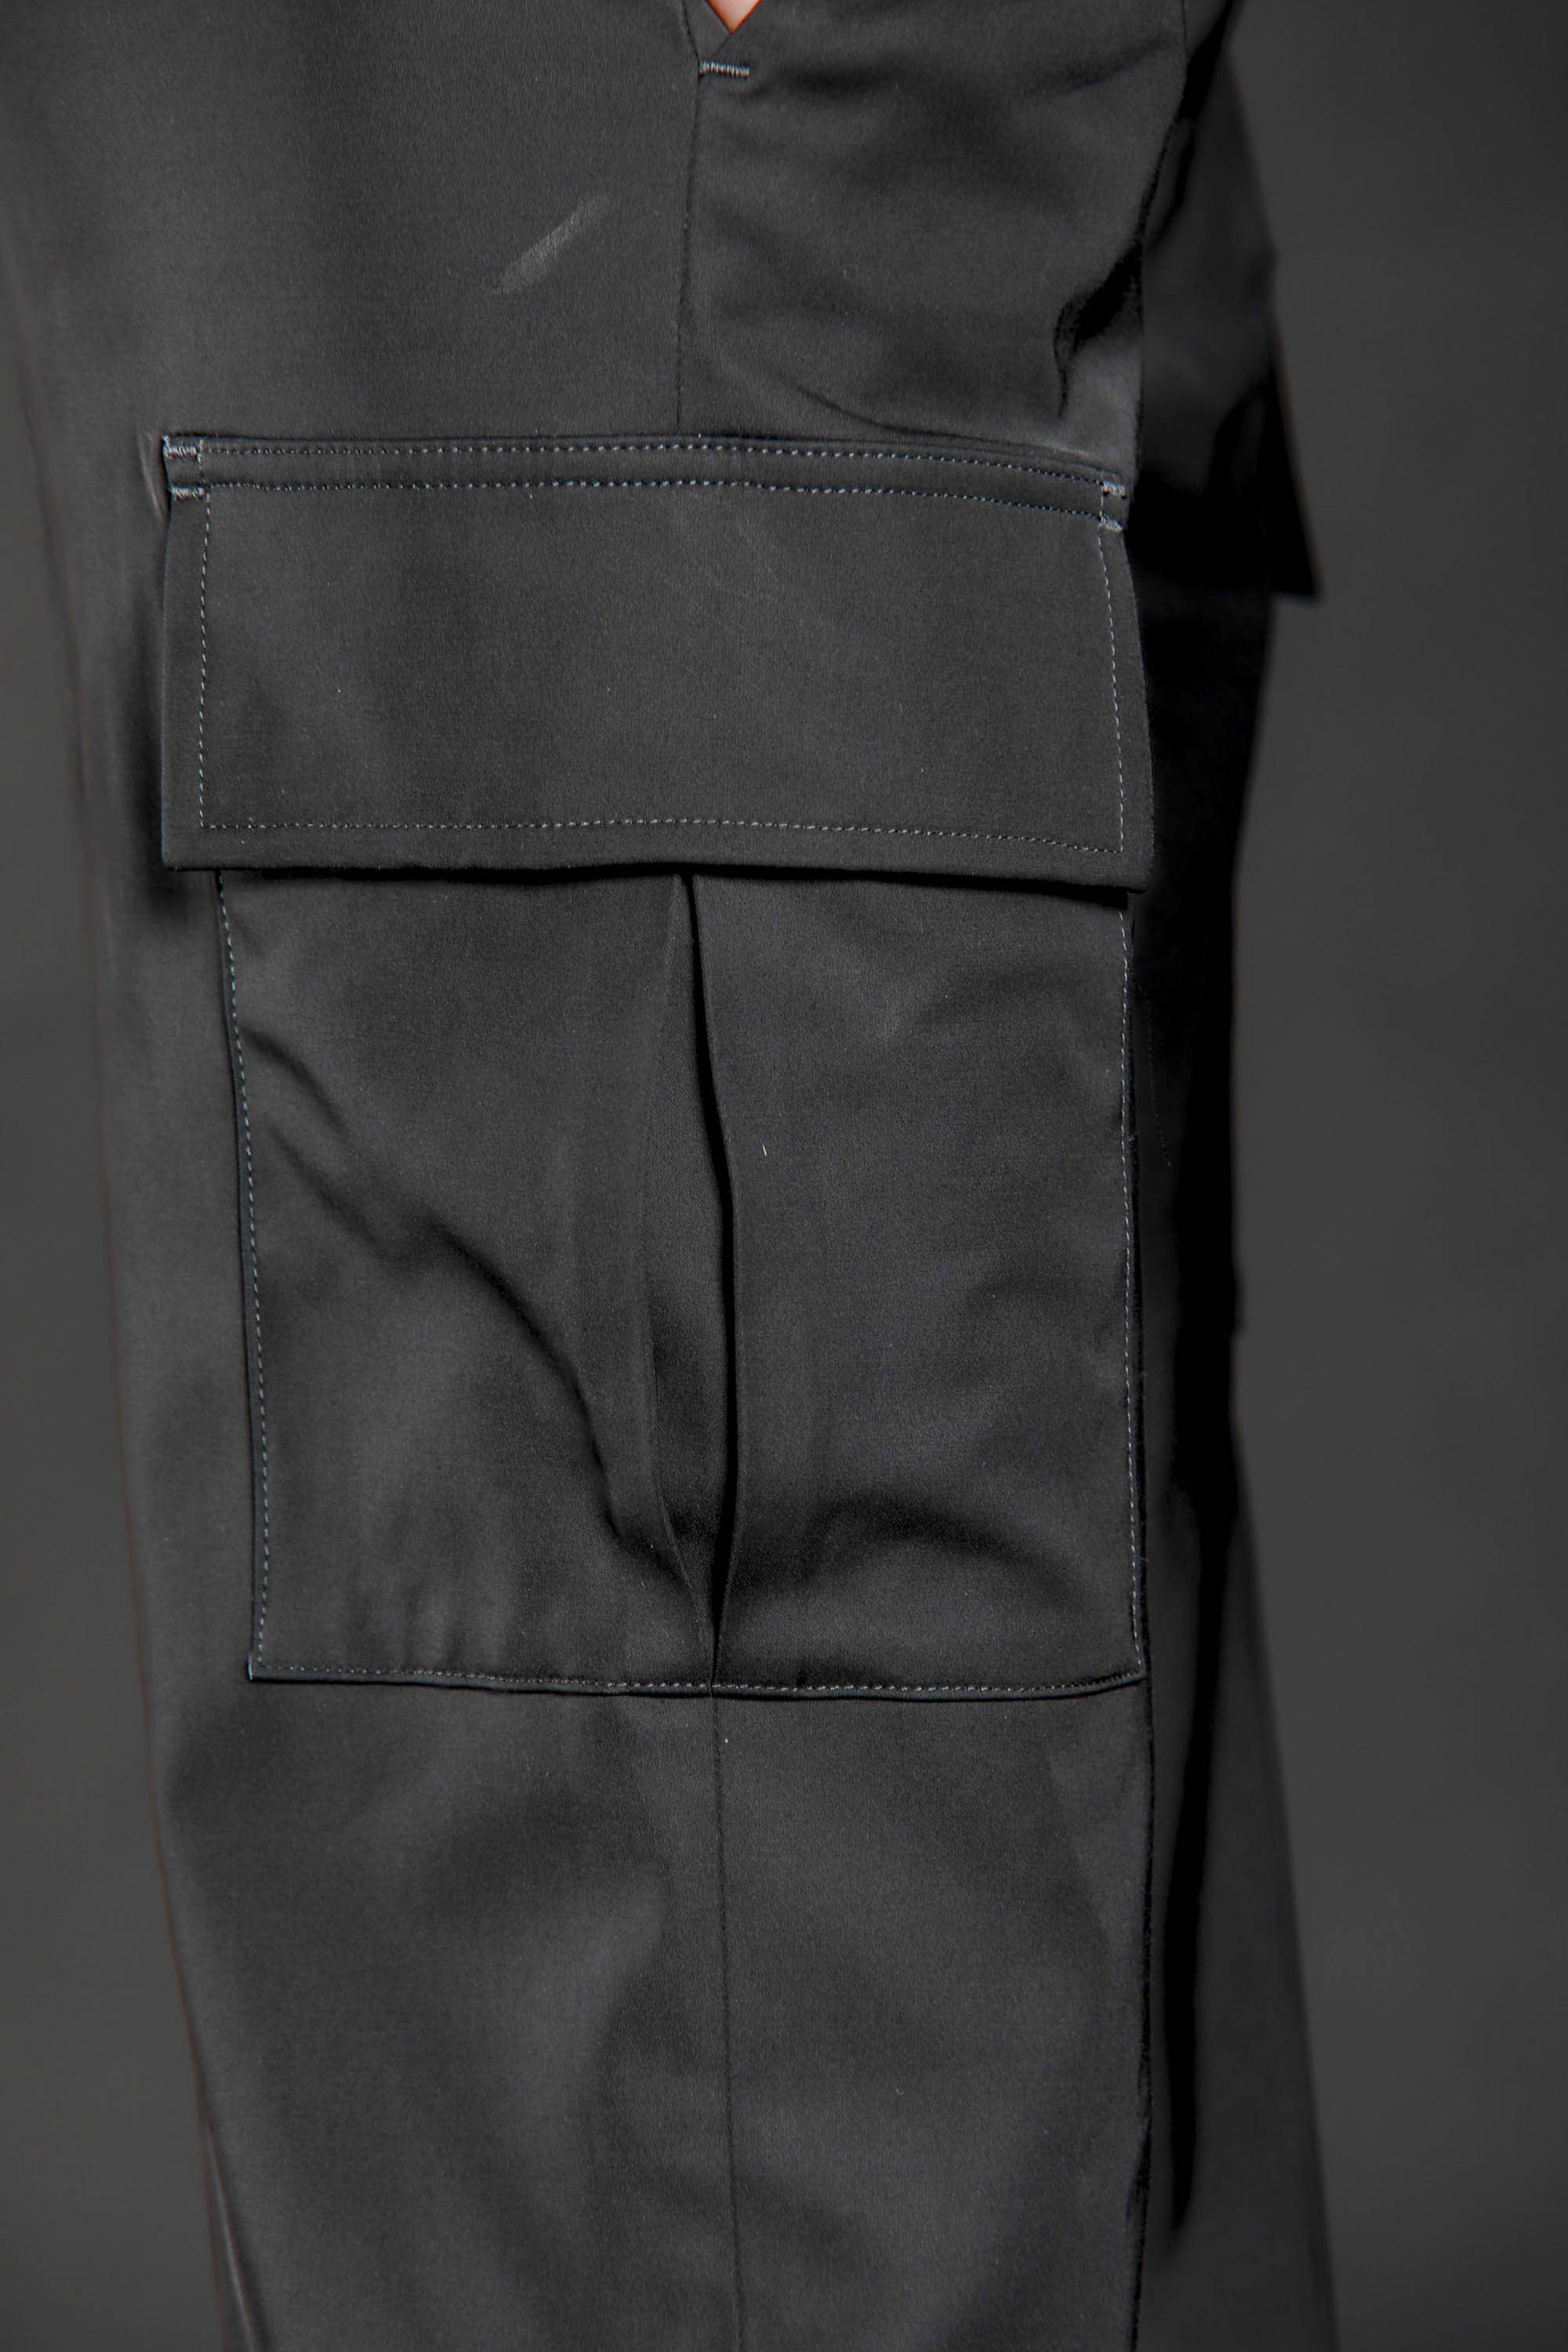 immagine 4 di pantalone cargo donna in satin colore nero modello Victoria di Mason's